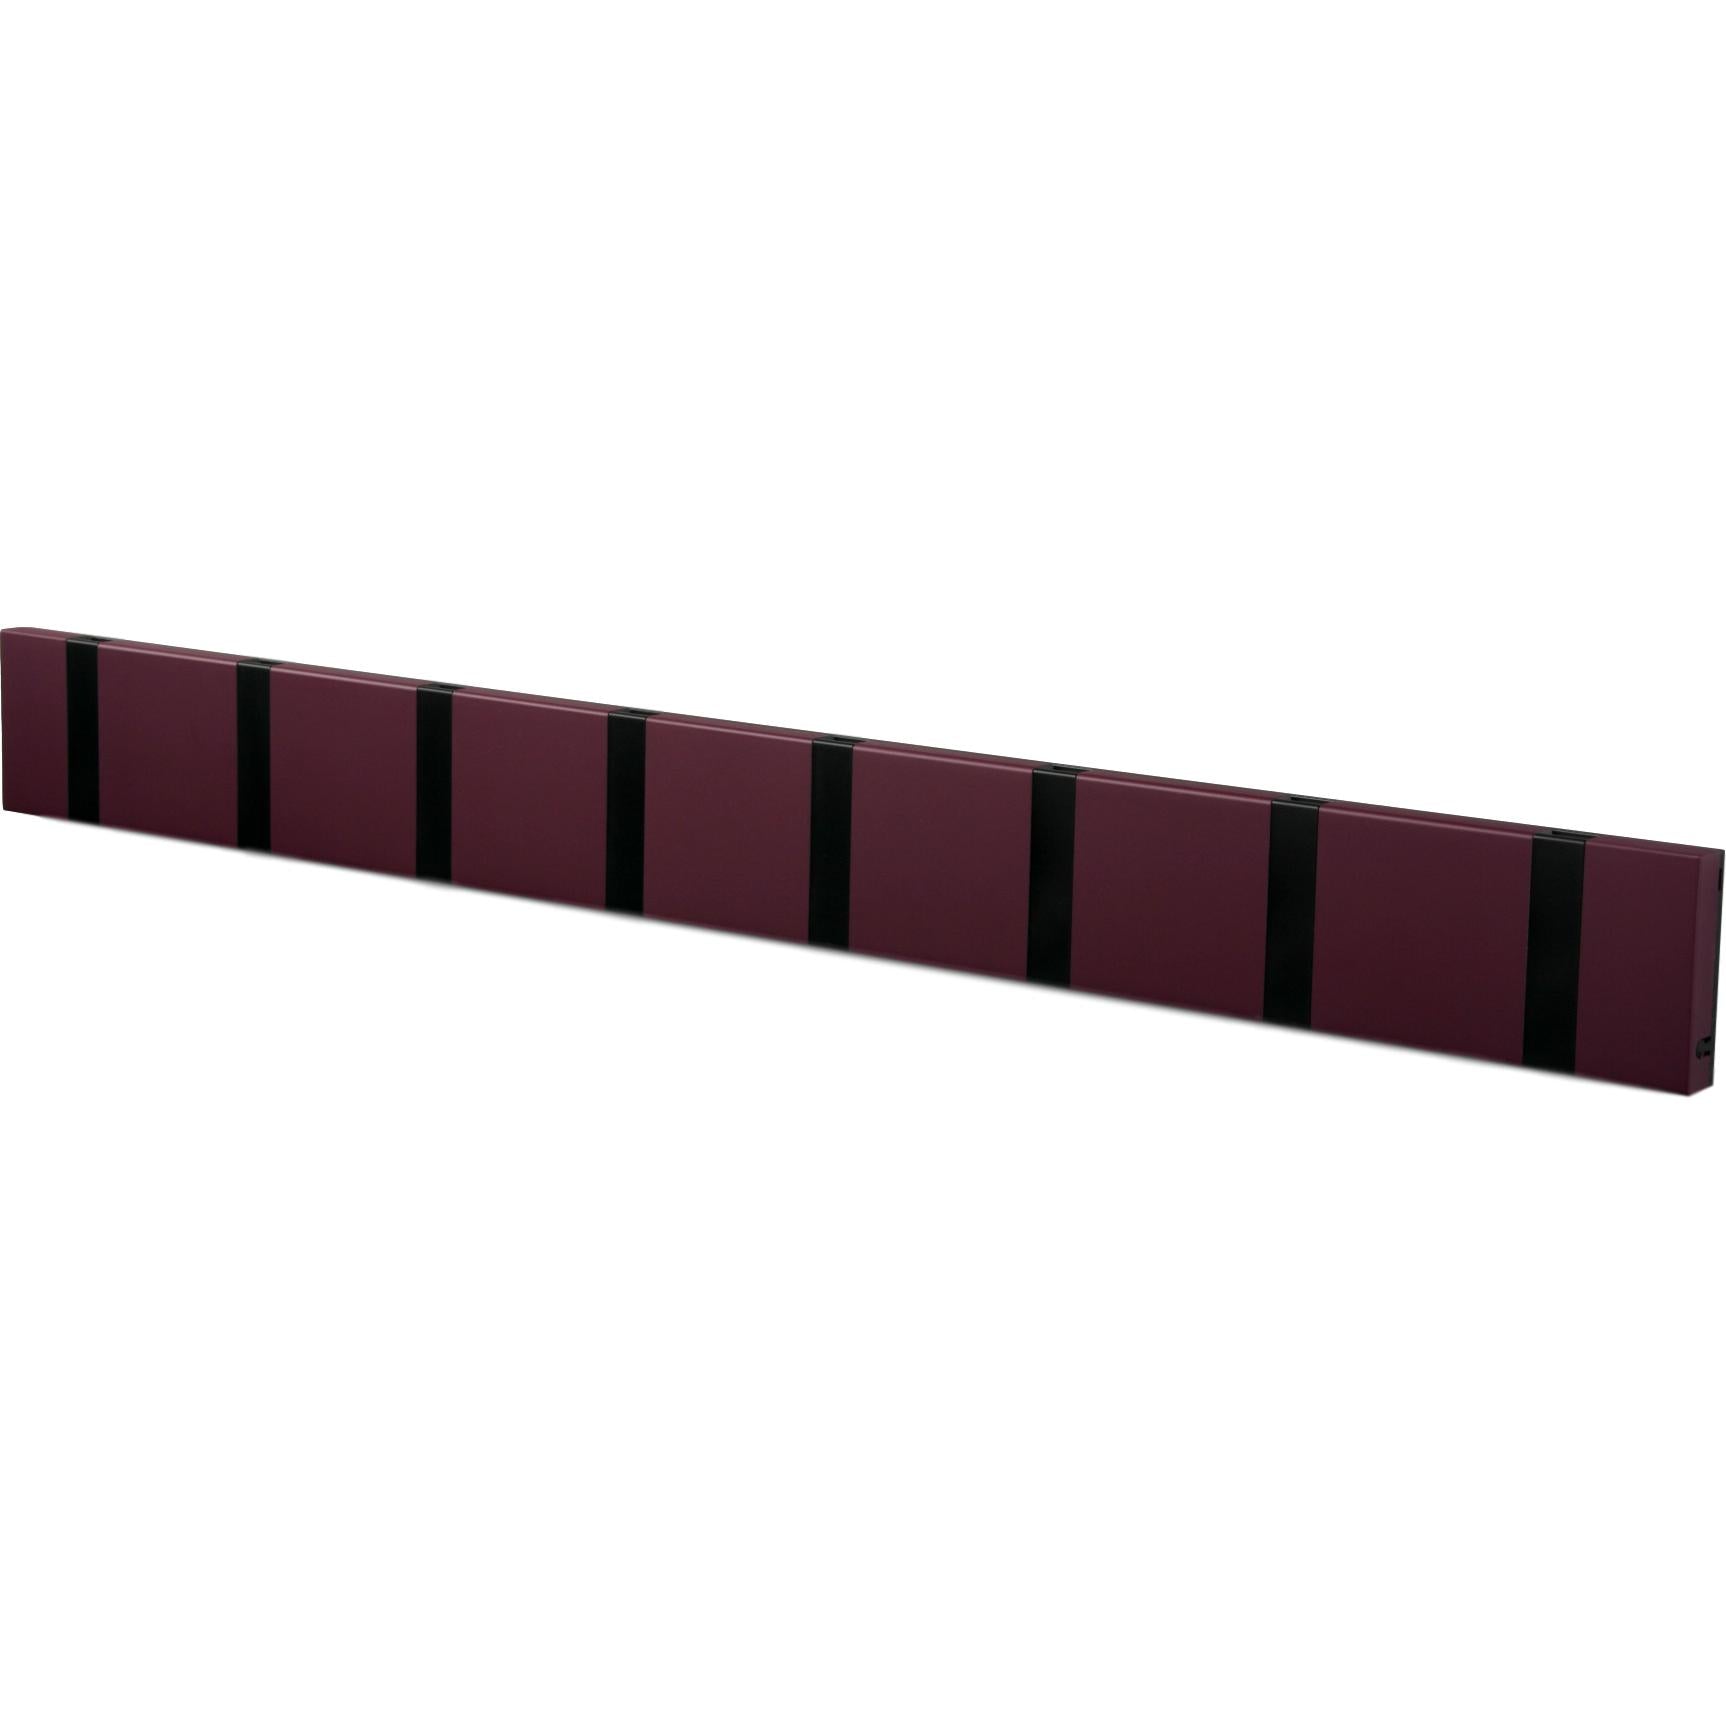 Loca Knax horisontalt frakkstativ 8 kroker, lilla/svart